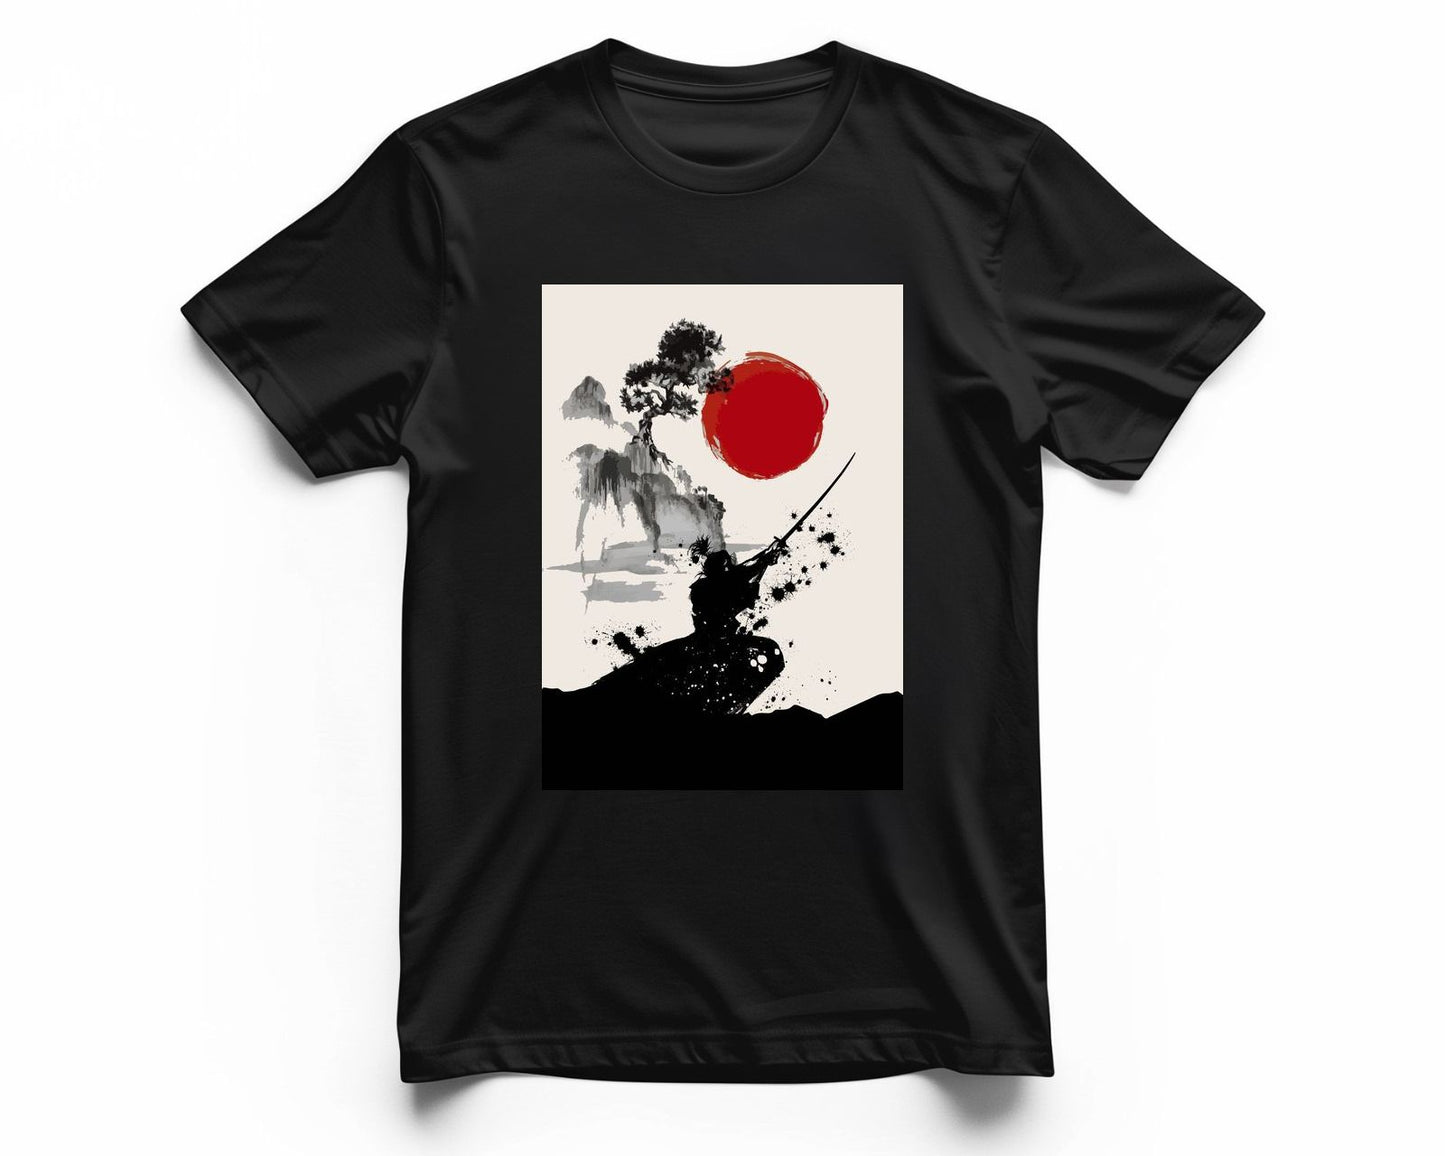 Samurai Japan5 - @AzlanXavier